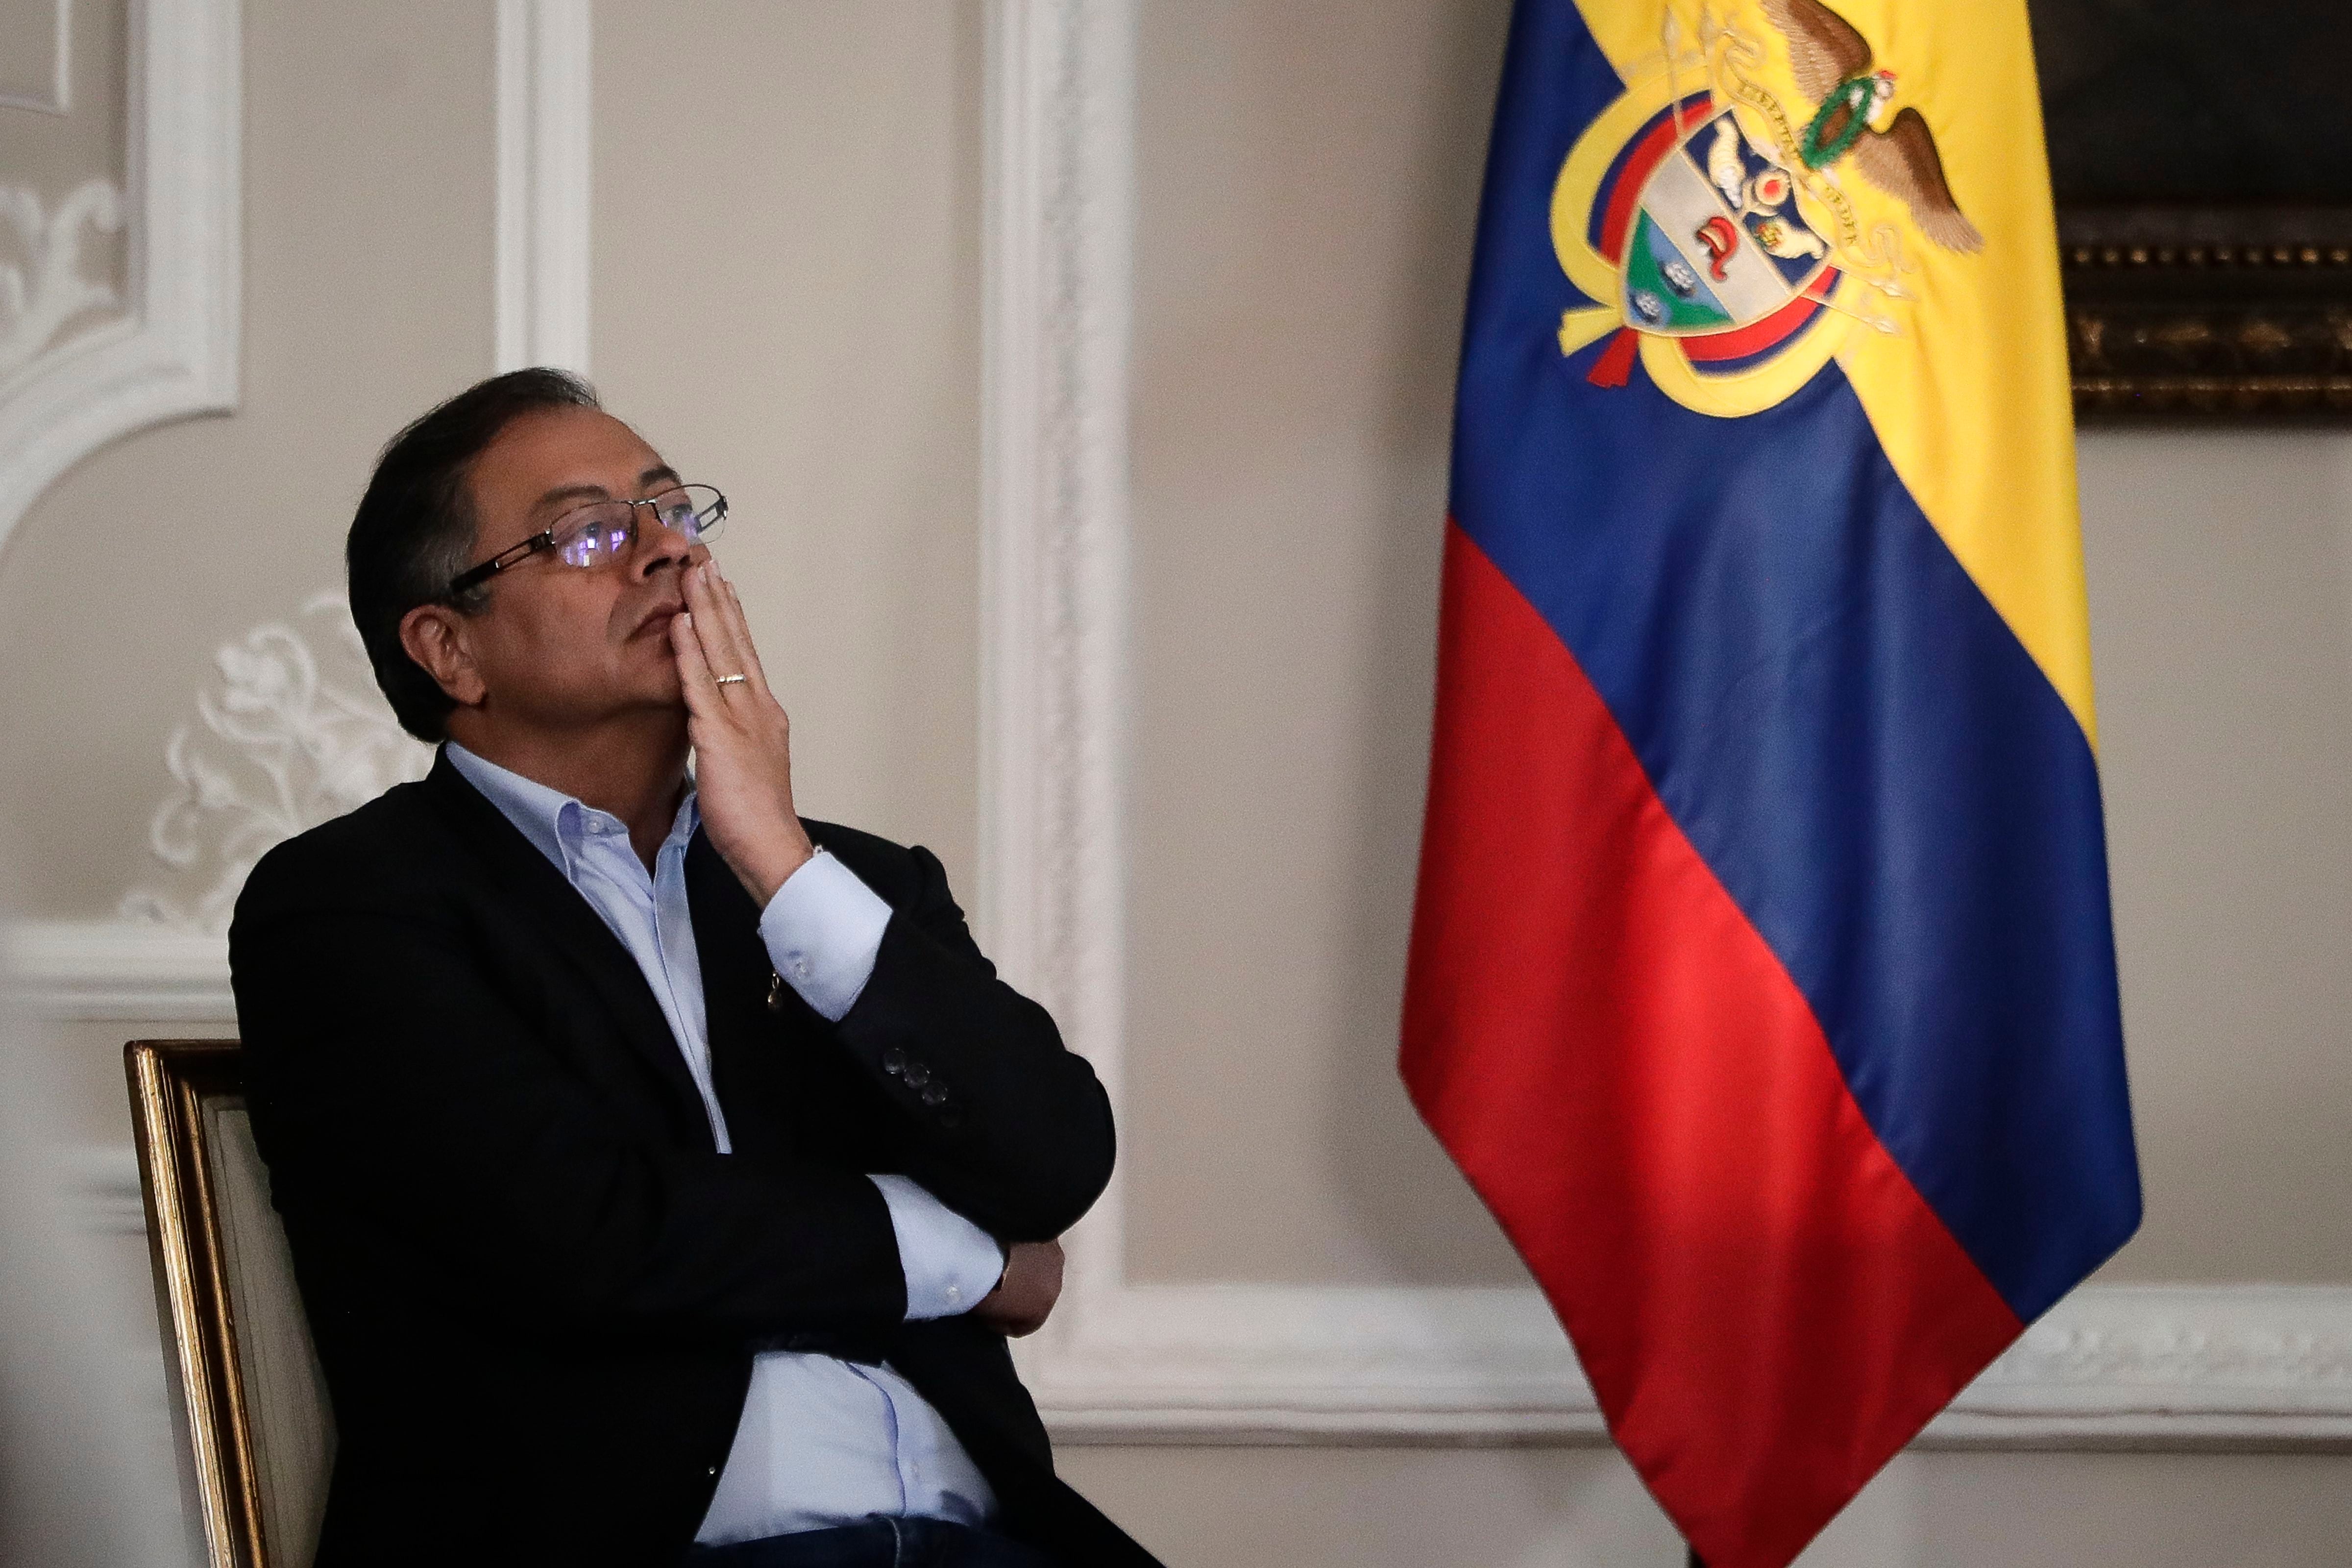 La SIP afirma que estigmatización a la prensa por parte del presidente Petro pasó a ser una acusación de "mentirosos" - crédito Iván Valencia/AP